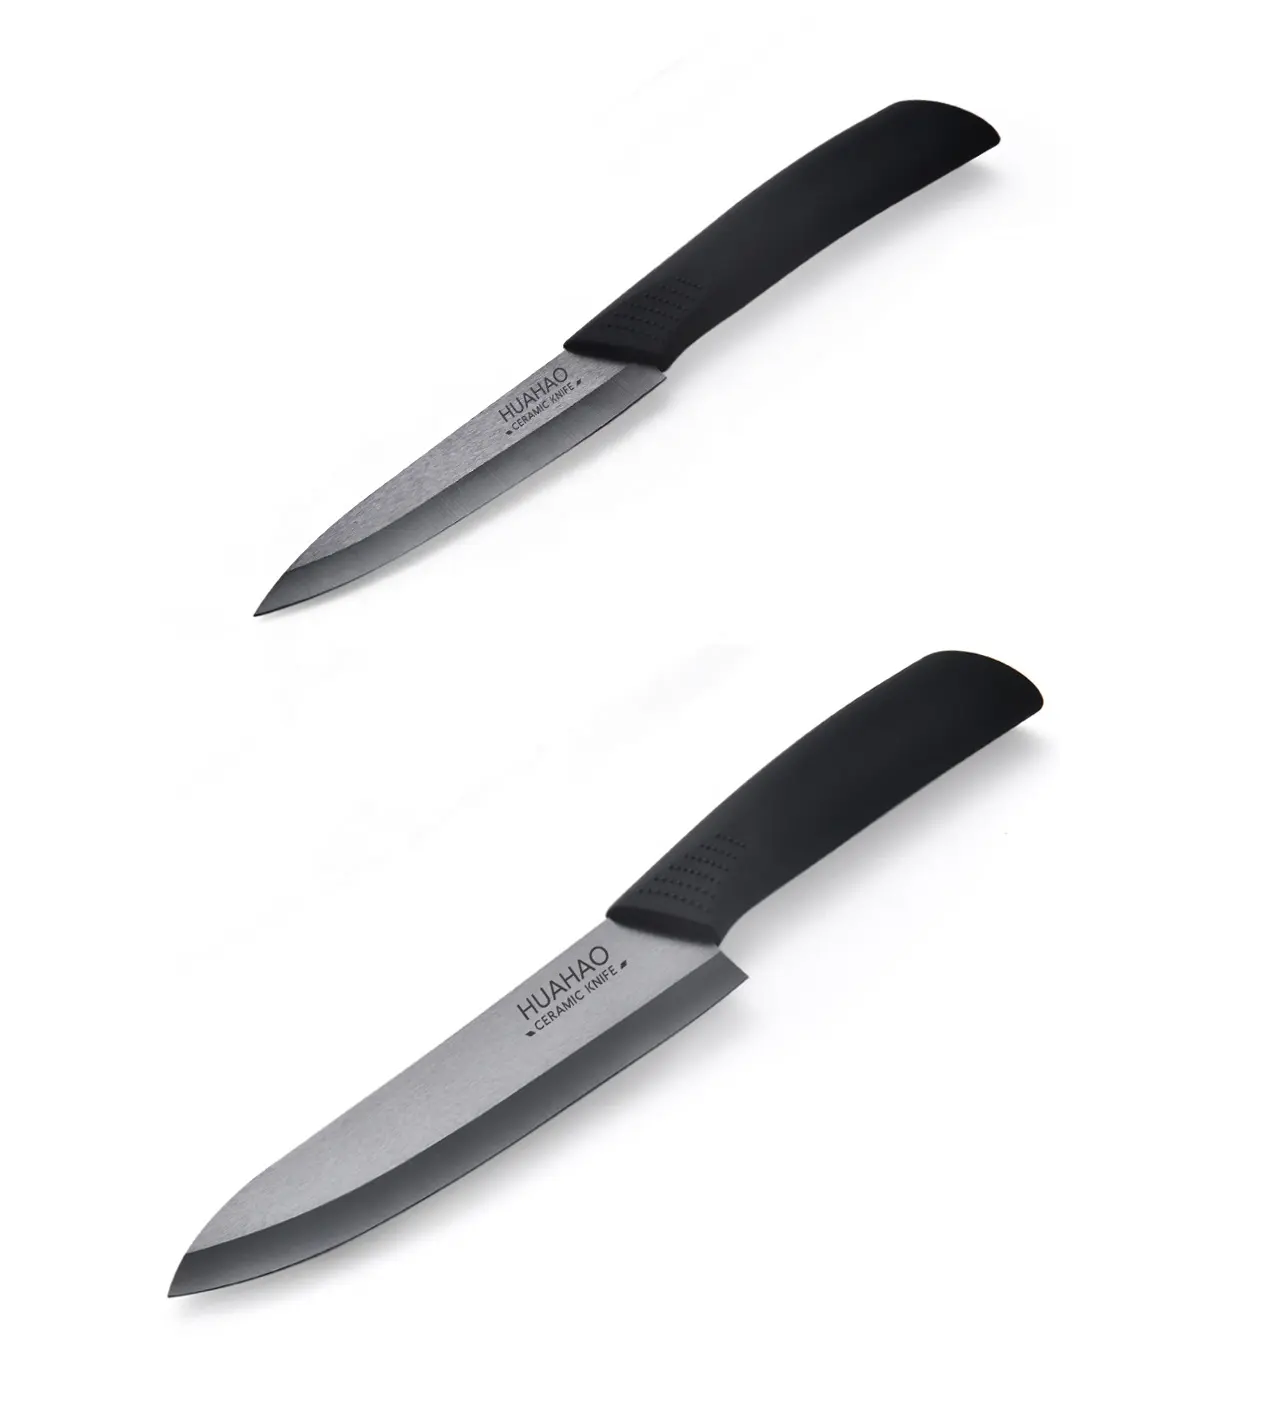 2 Cái Gốm Knife Set Trái Cây Rau Nhà Bếp Gọt Dao Ngoài Trời Mini Pocket Knife Với Vỏ Bọc